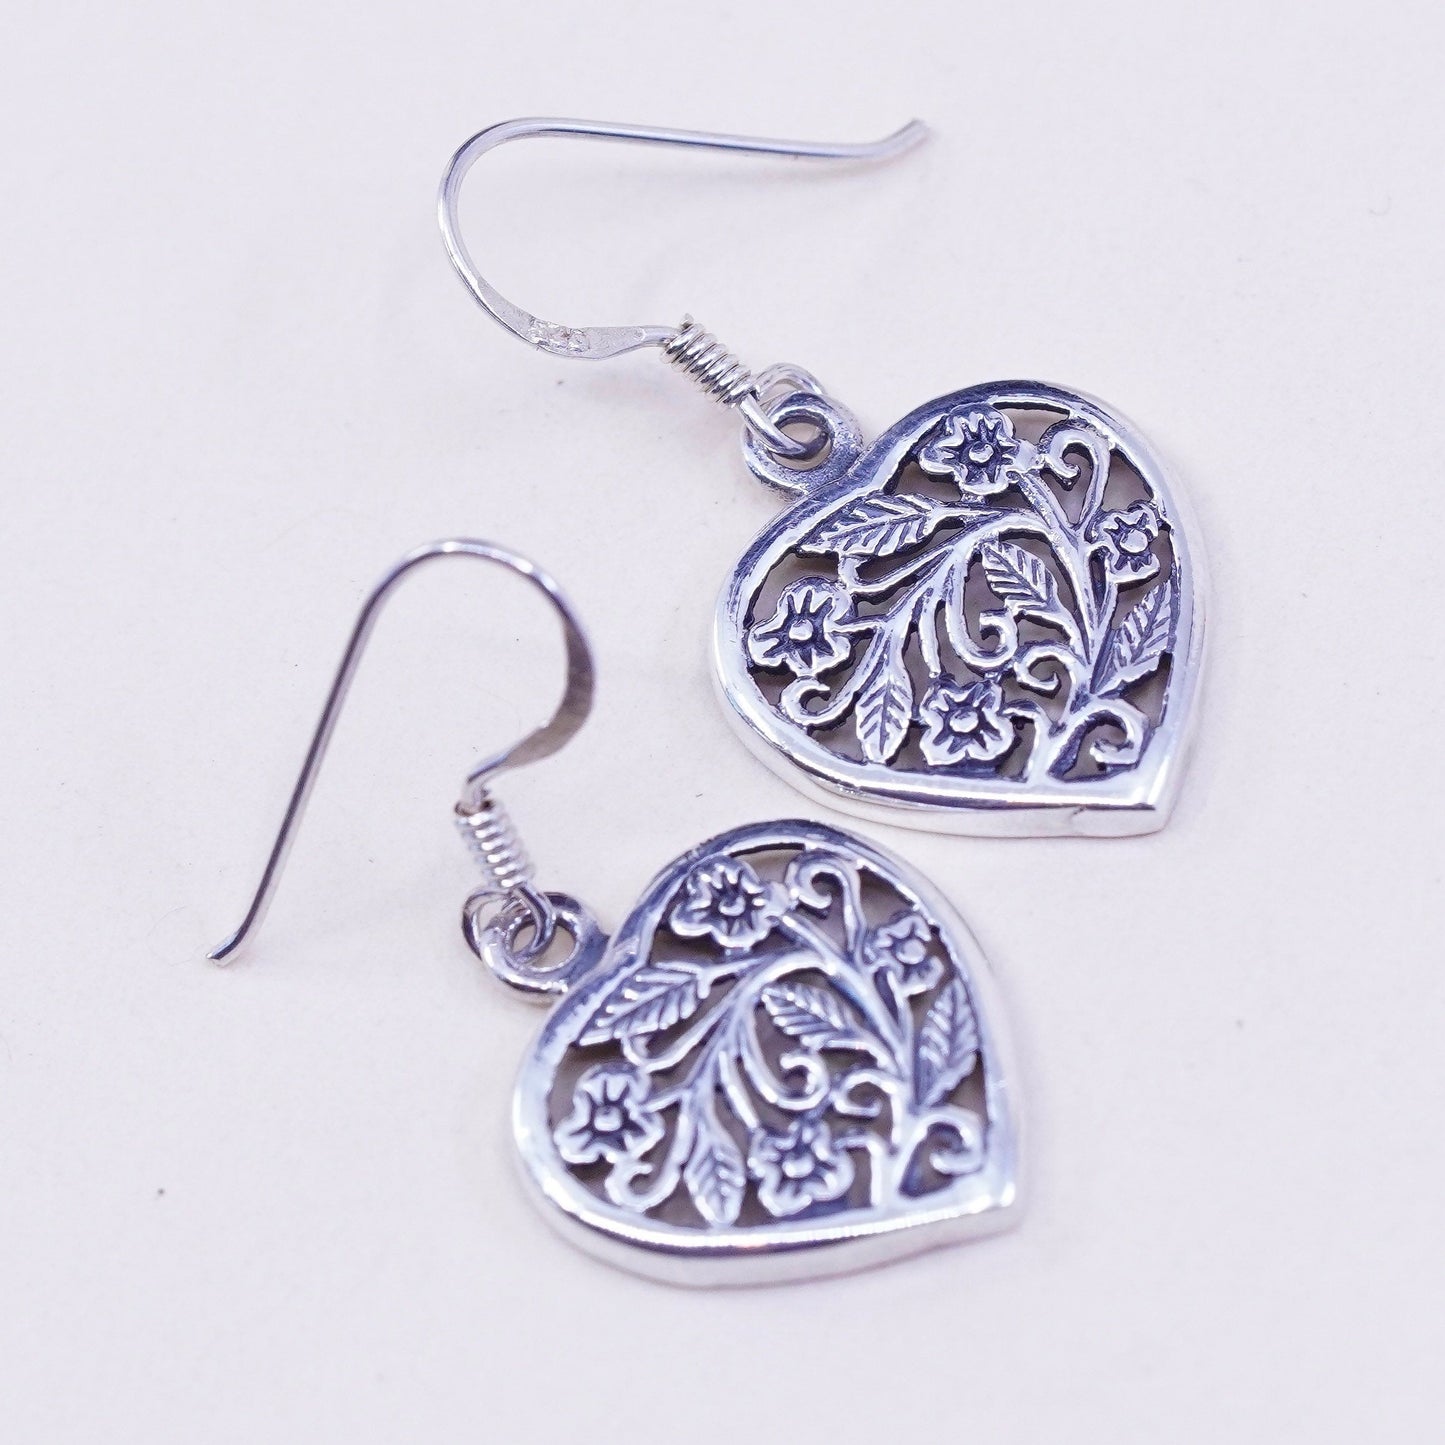 Vintage sterling silver handmade earrings, floral 925 filigree heart